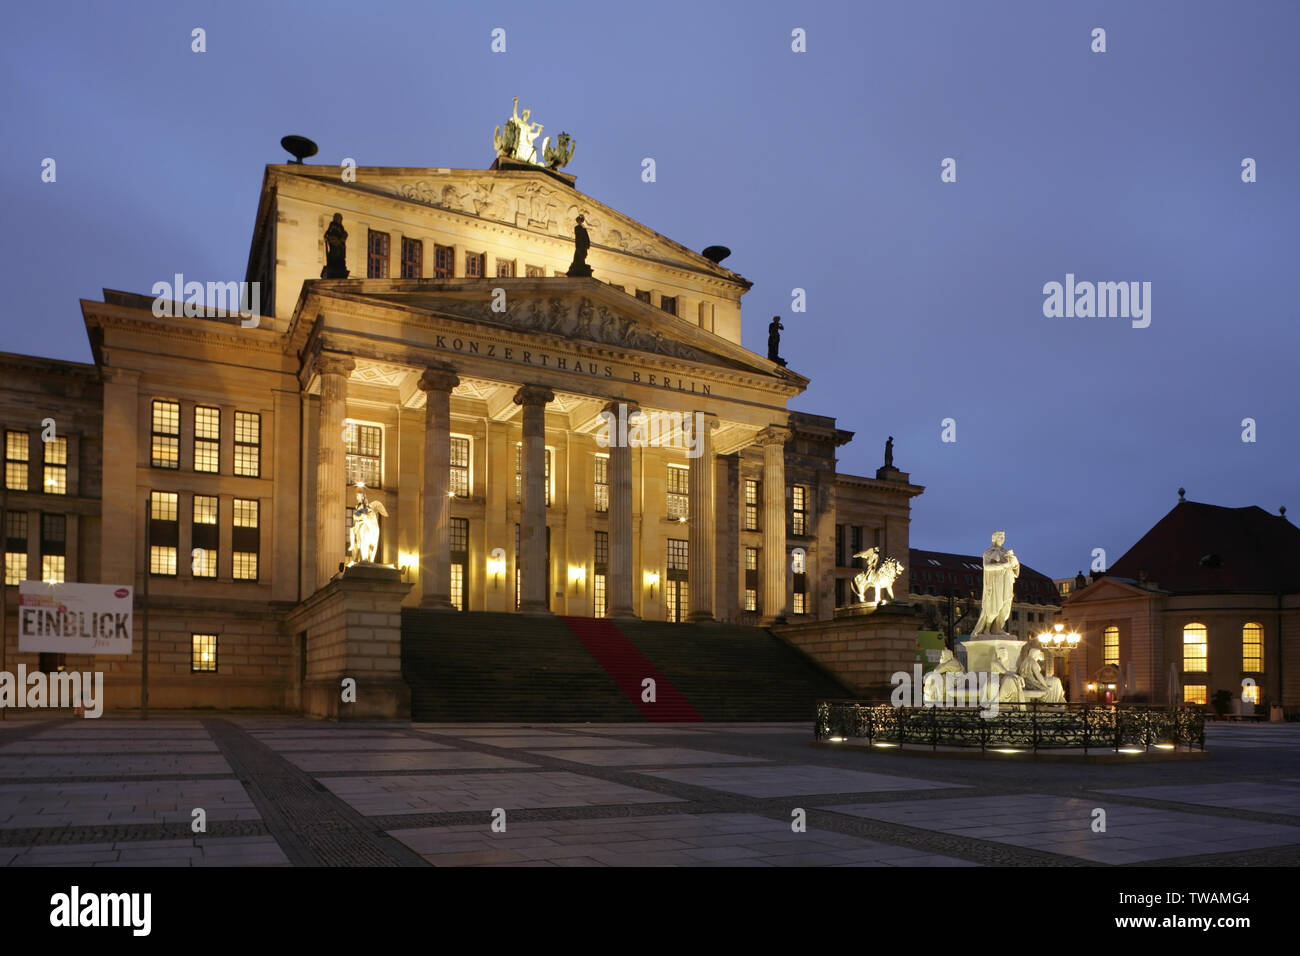 The Konzerthaus Berlin, Gendarmenmarkt, Berlin, Germany. Stock Photo